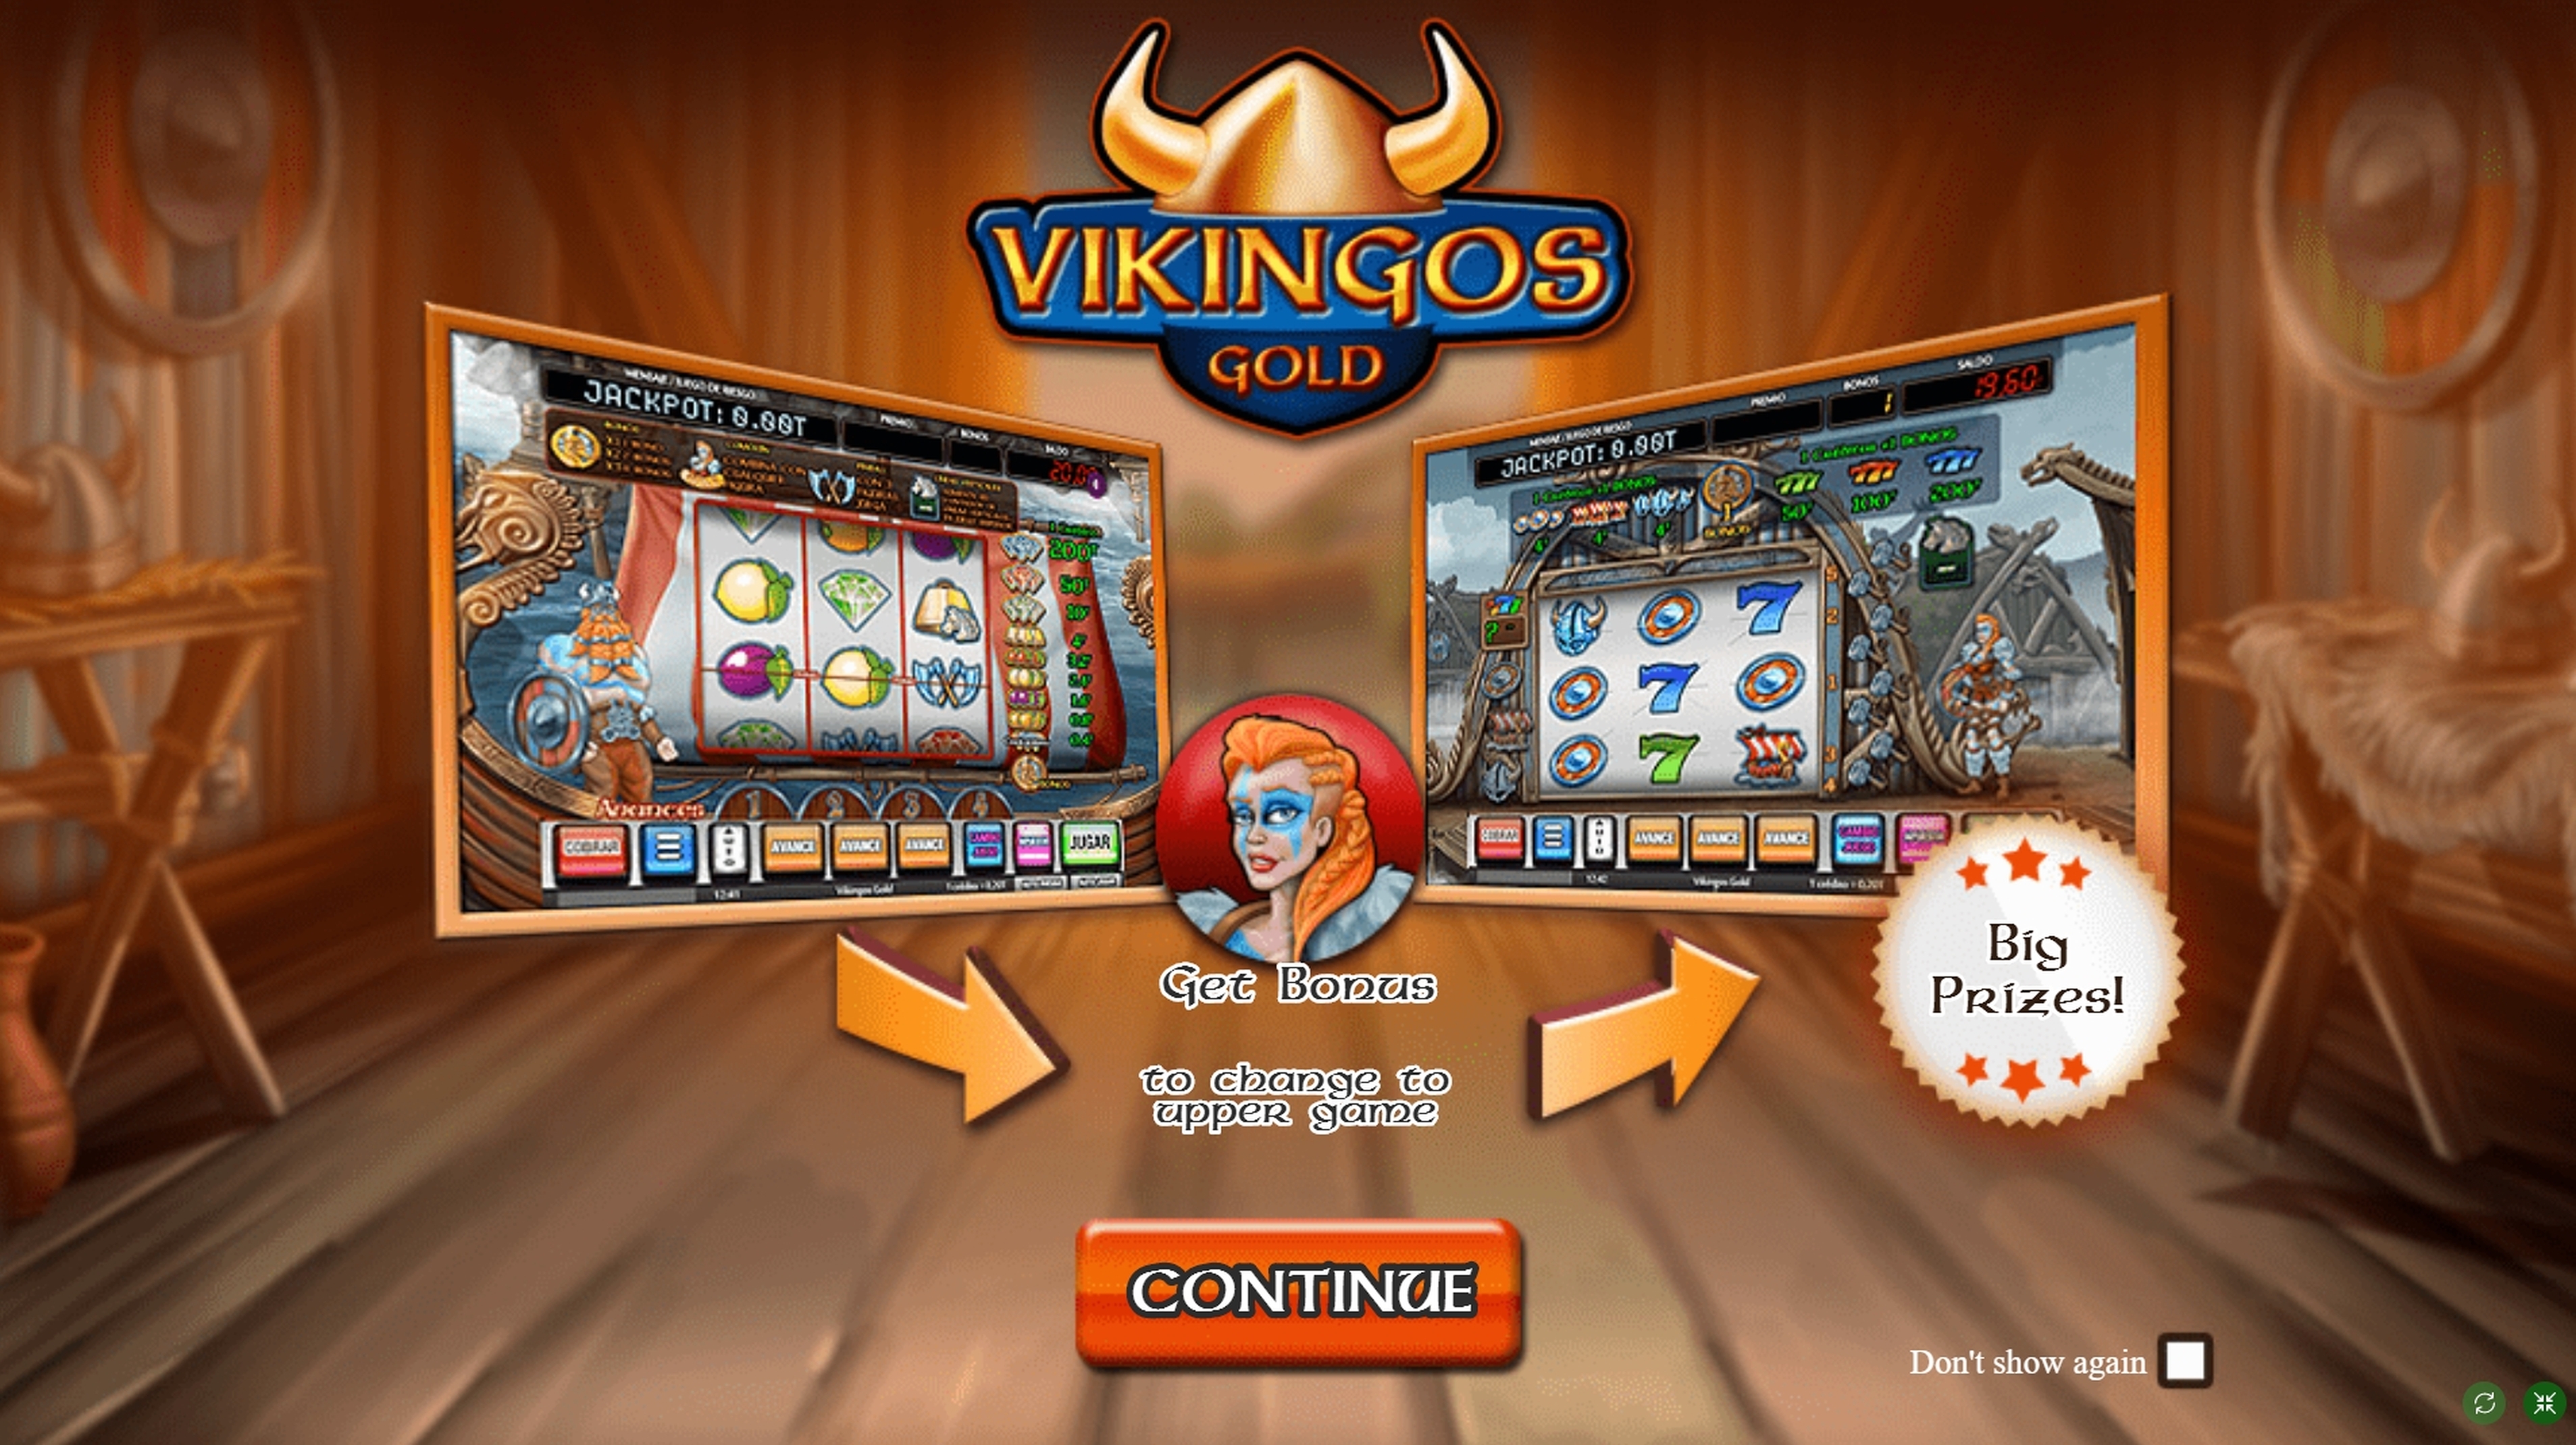 Play Vikingos Gold Free Casino Slot Game by MGA